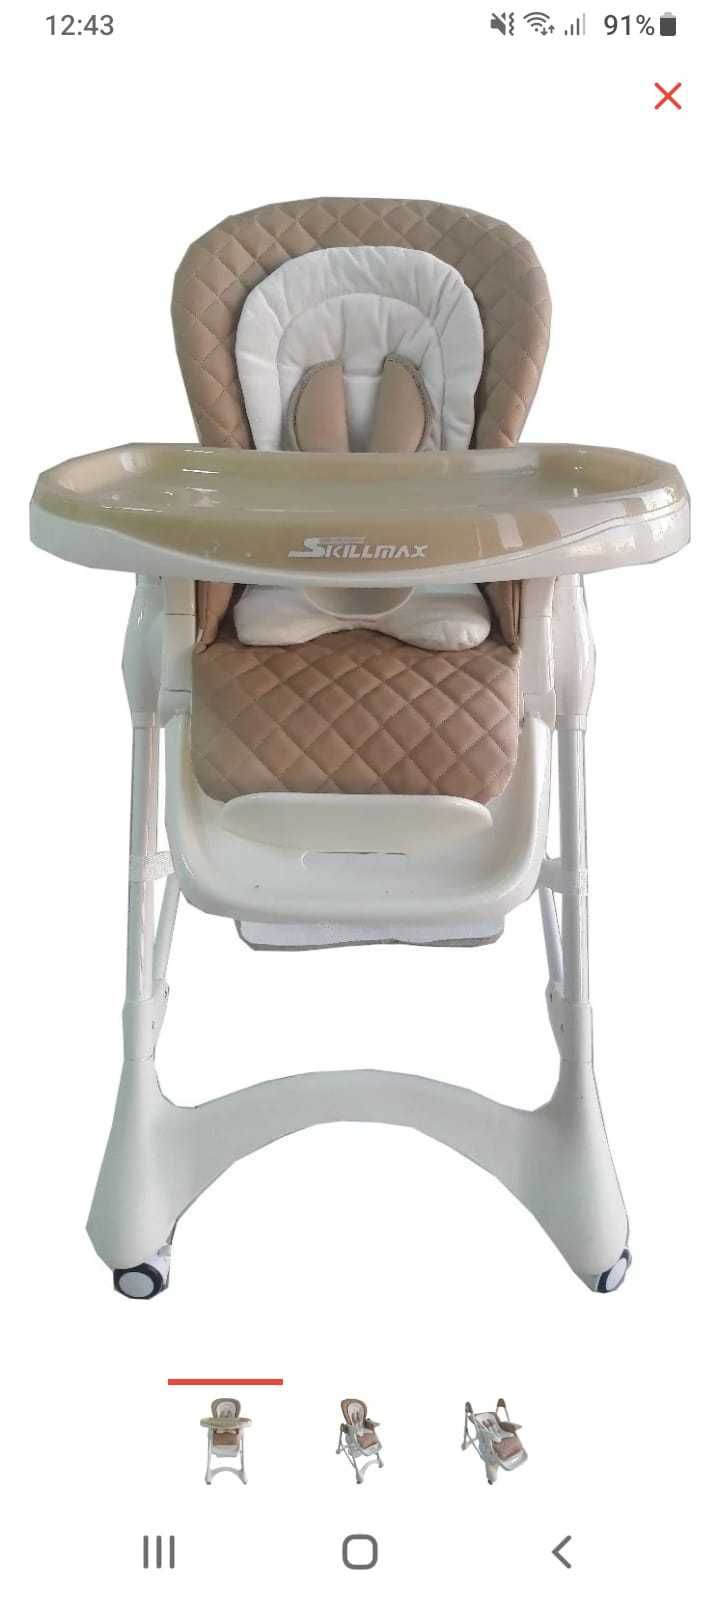 продам для кормлении детское кресло фирмы Skilmax